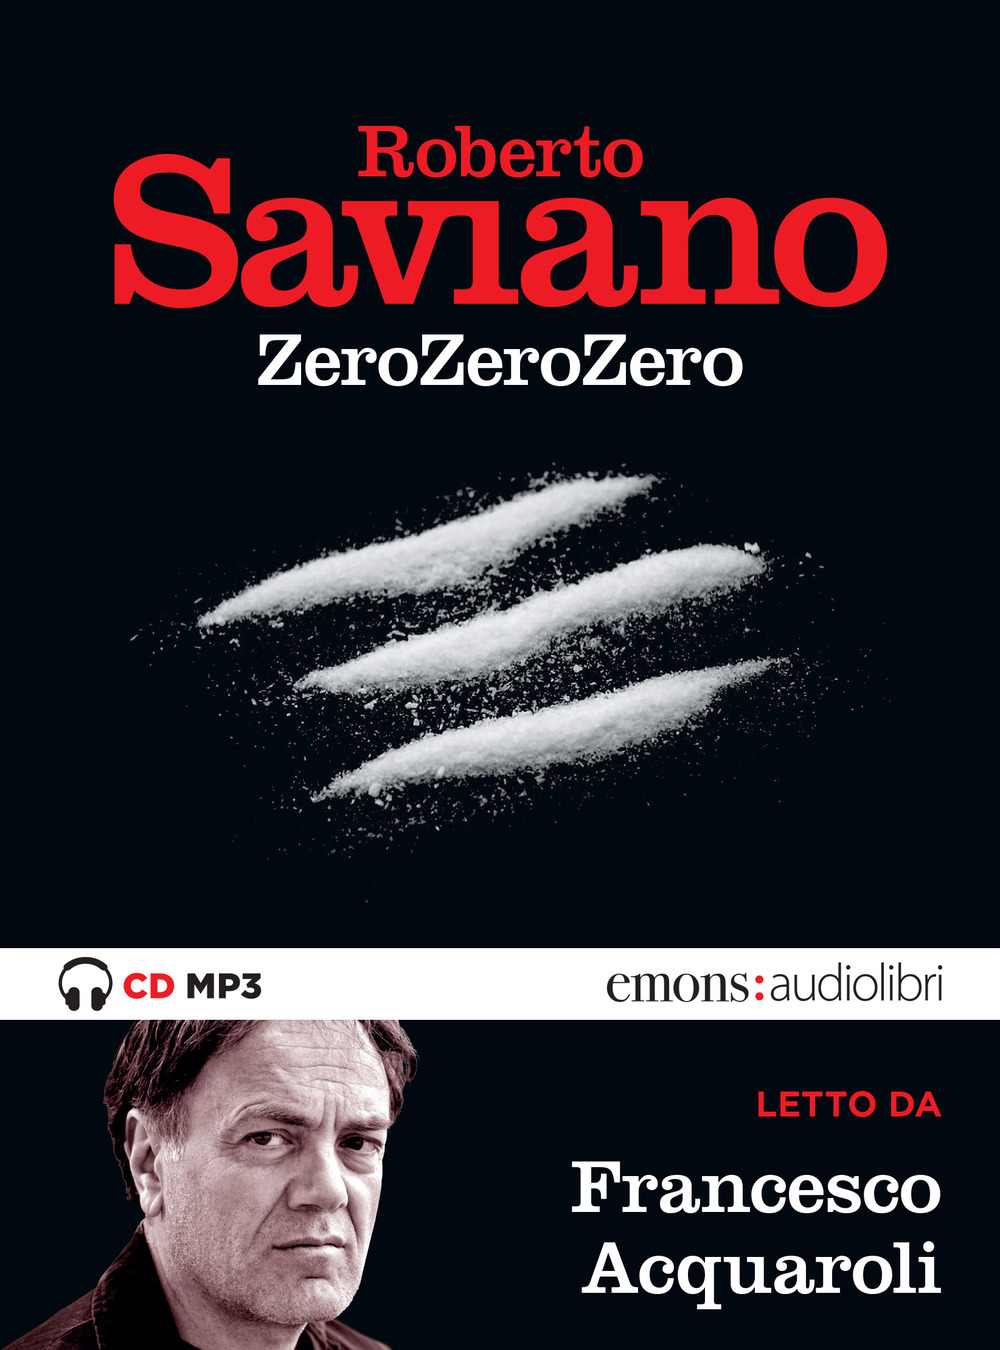 Audiolibro Roberto Saviano - Zerozerozero Letto Da Francesco Acquaroli. Audiolibro. CD Audio Formato MP3 NUOVO SIGILLATO, EDIZIONE DEL 19/09/2019 SUBITO DISPONIBILE